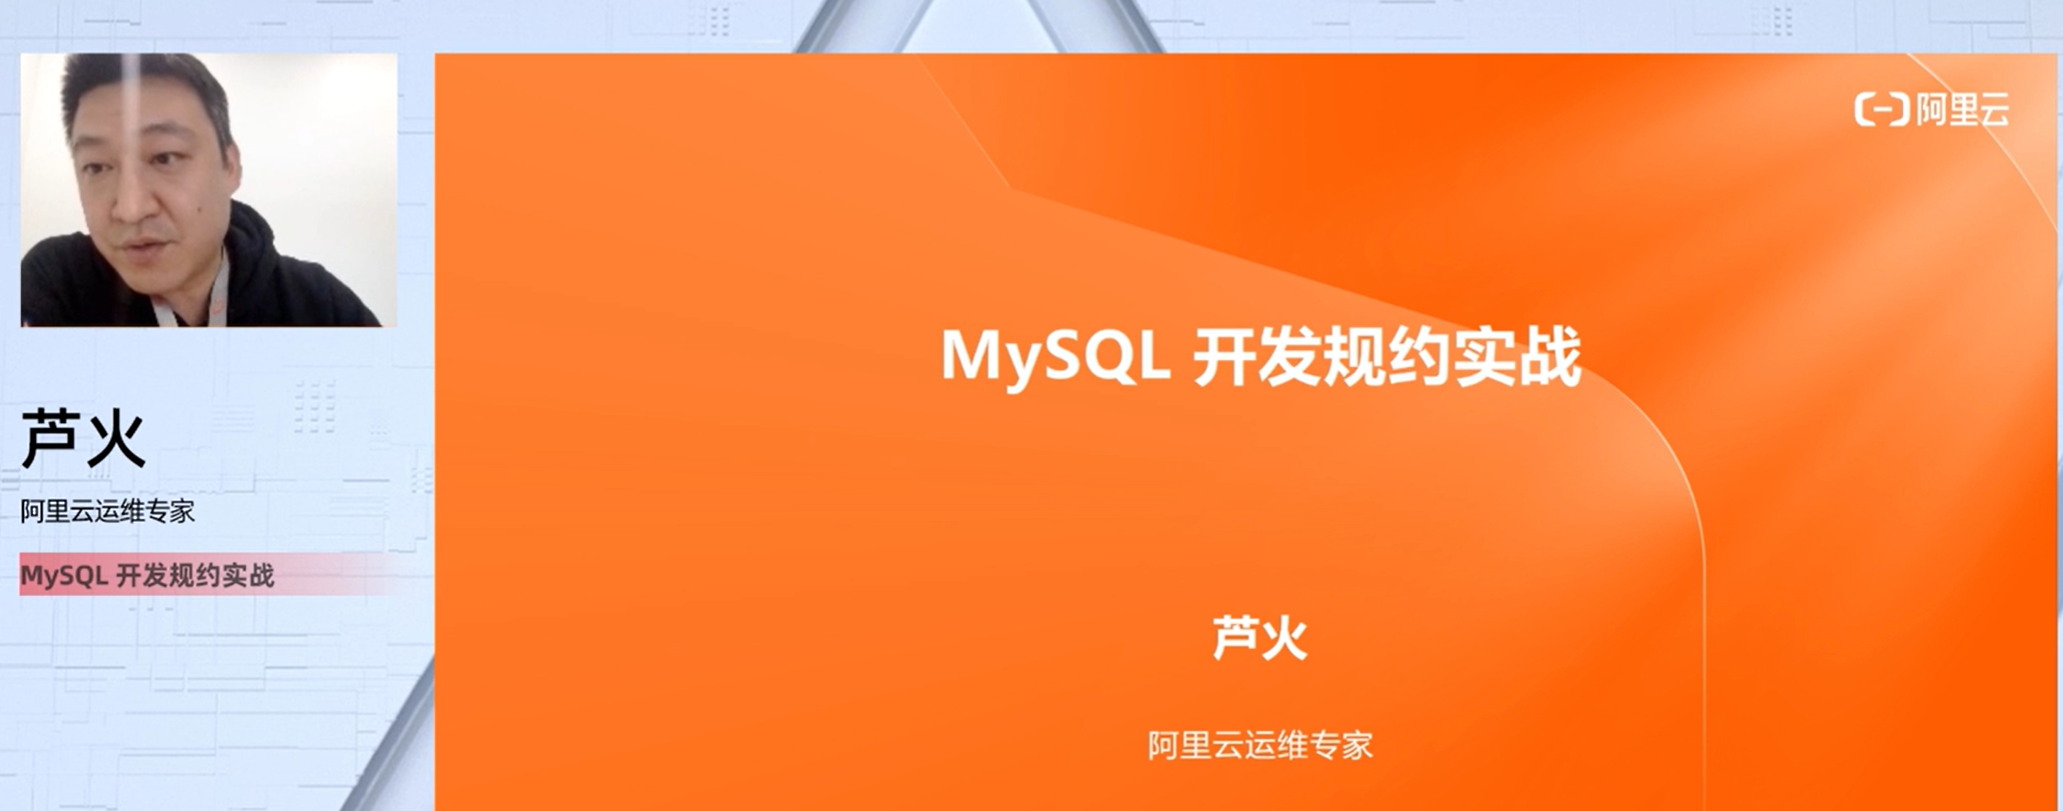 【七天深入MySQL实战营】Day5 MySQL 开发规约实战【视频】